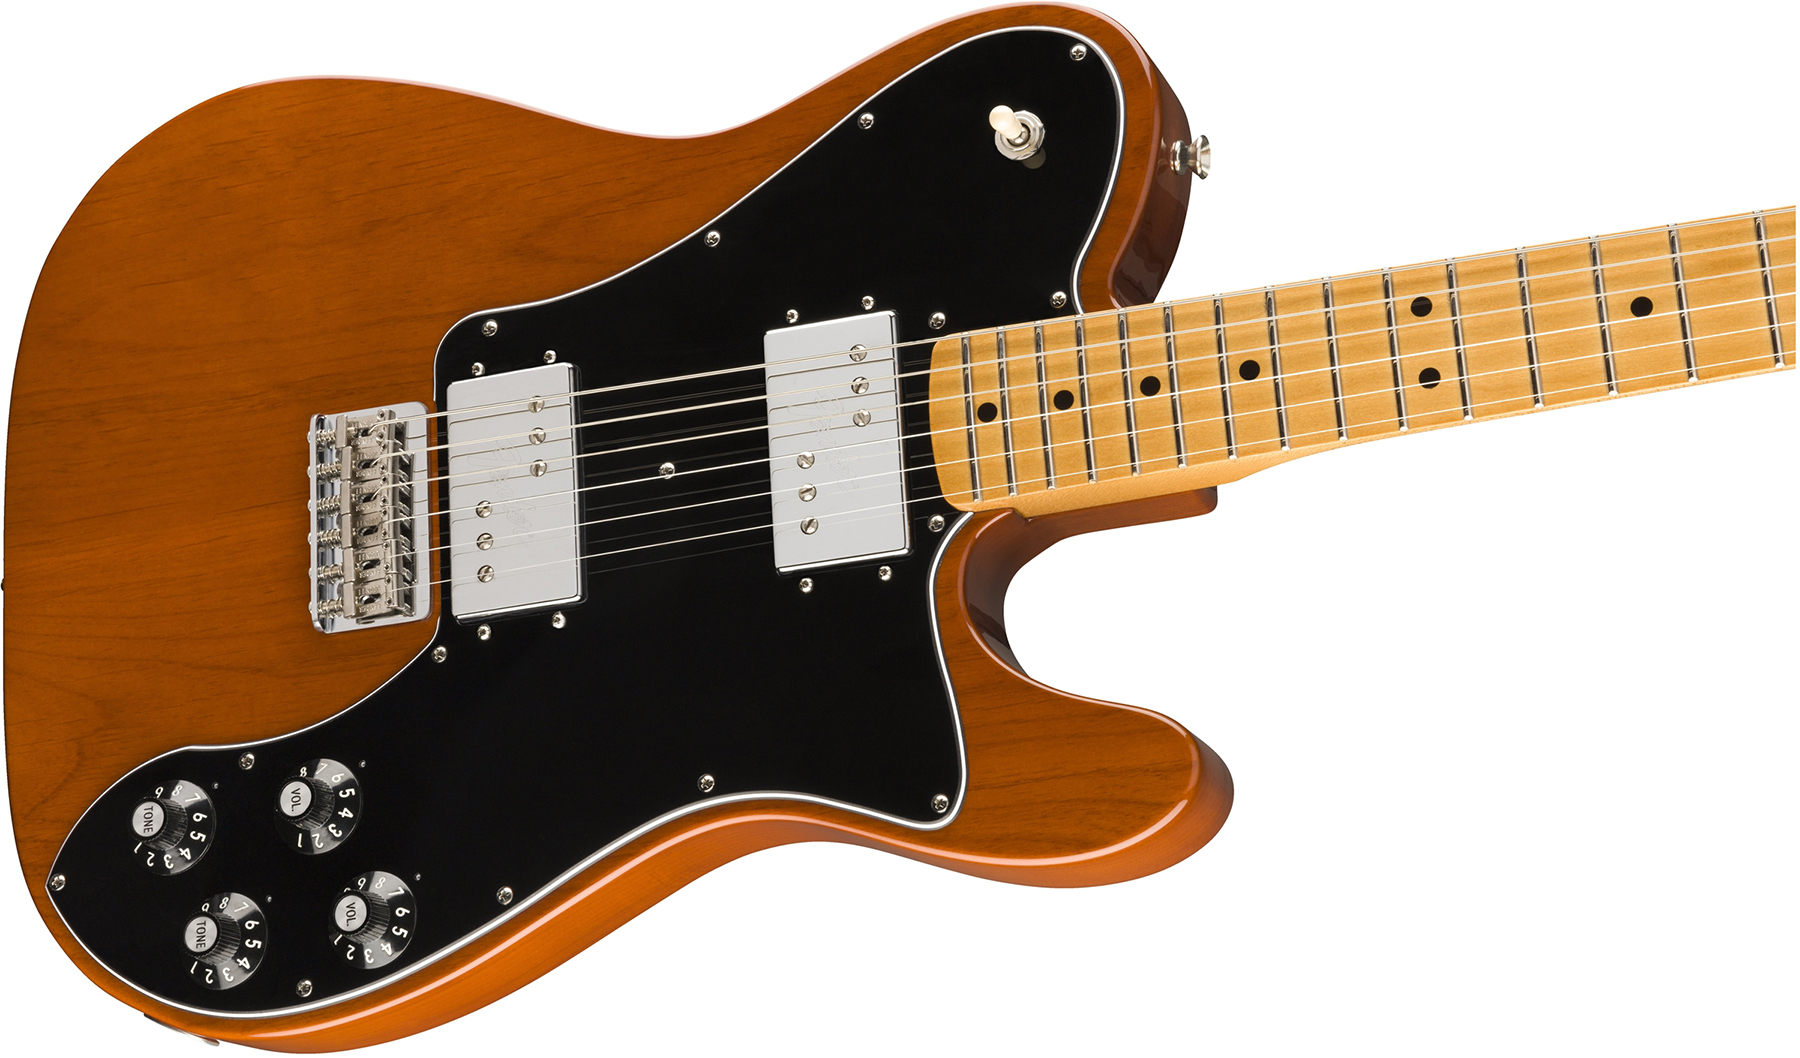 Fender Tele 70s Deluxe Vintera Vintage Mex Mn - Mocha - Guitarra eléctrica con forma de tel - Variation 2